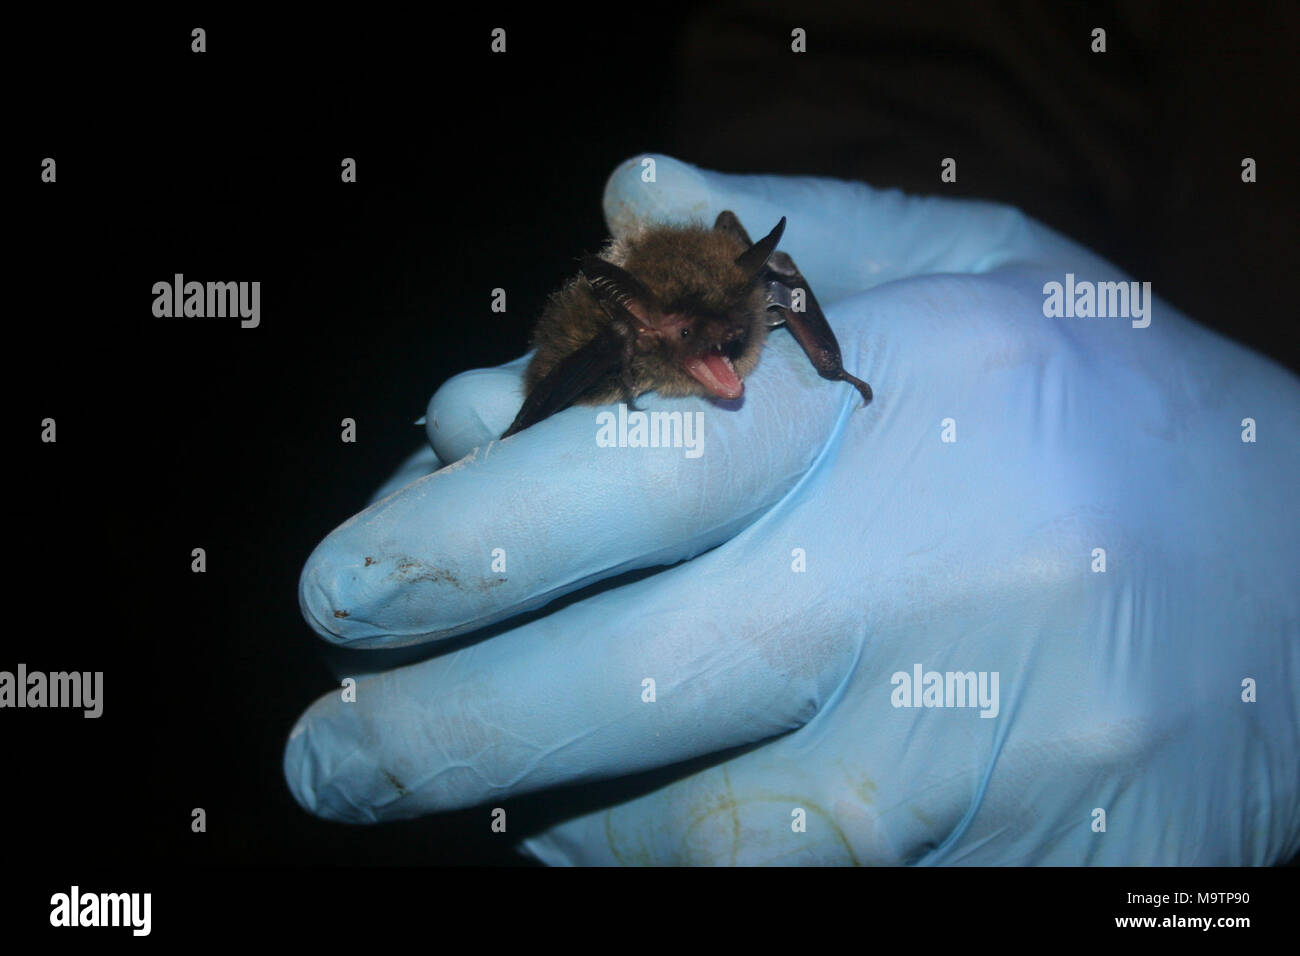 Northern Long-eared Bat. Northern Long-eared Bat Stock Photo